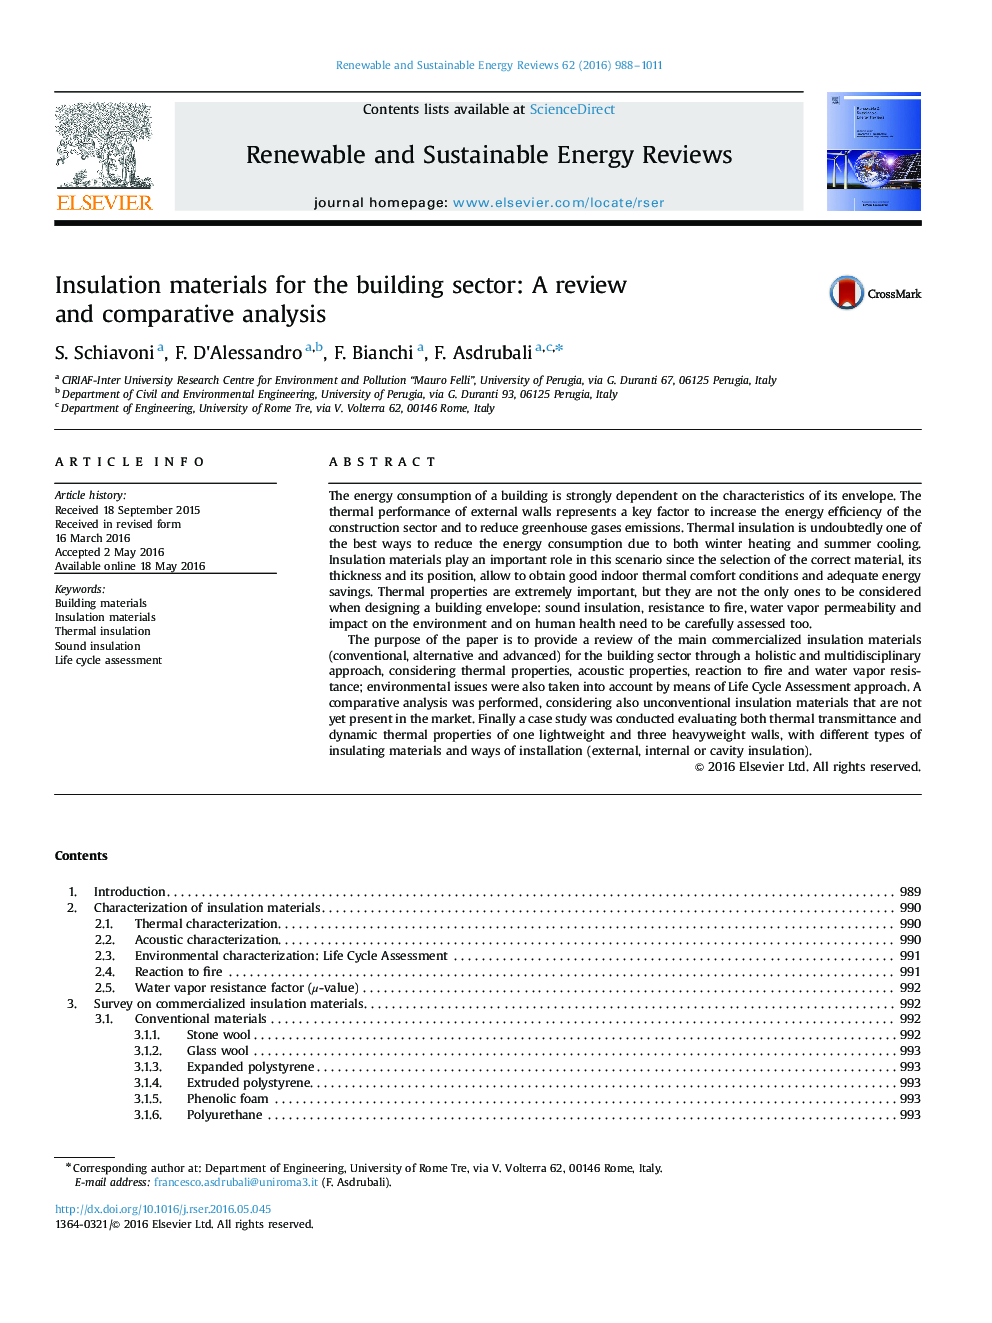 مواد عایق برای بخش ساختمان: بررسی و تجزیه و تحلیل تطبیقی 